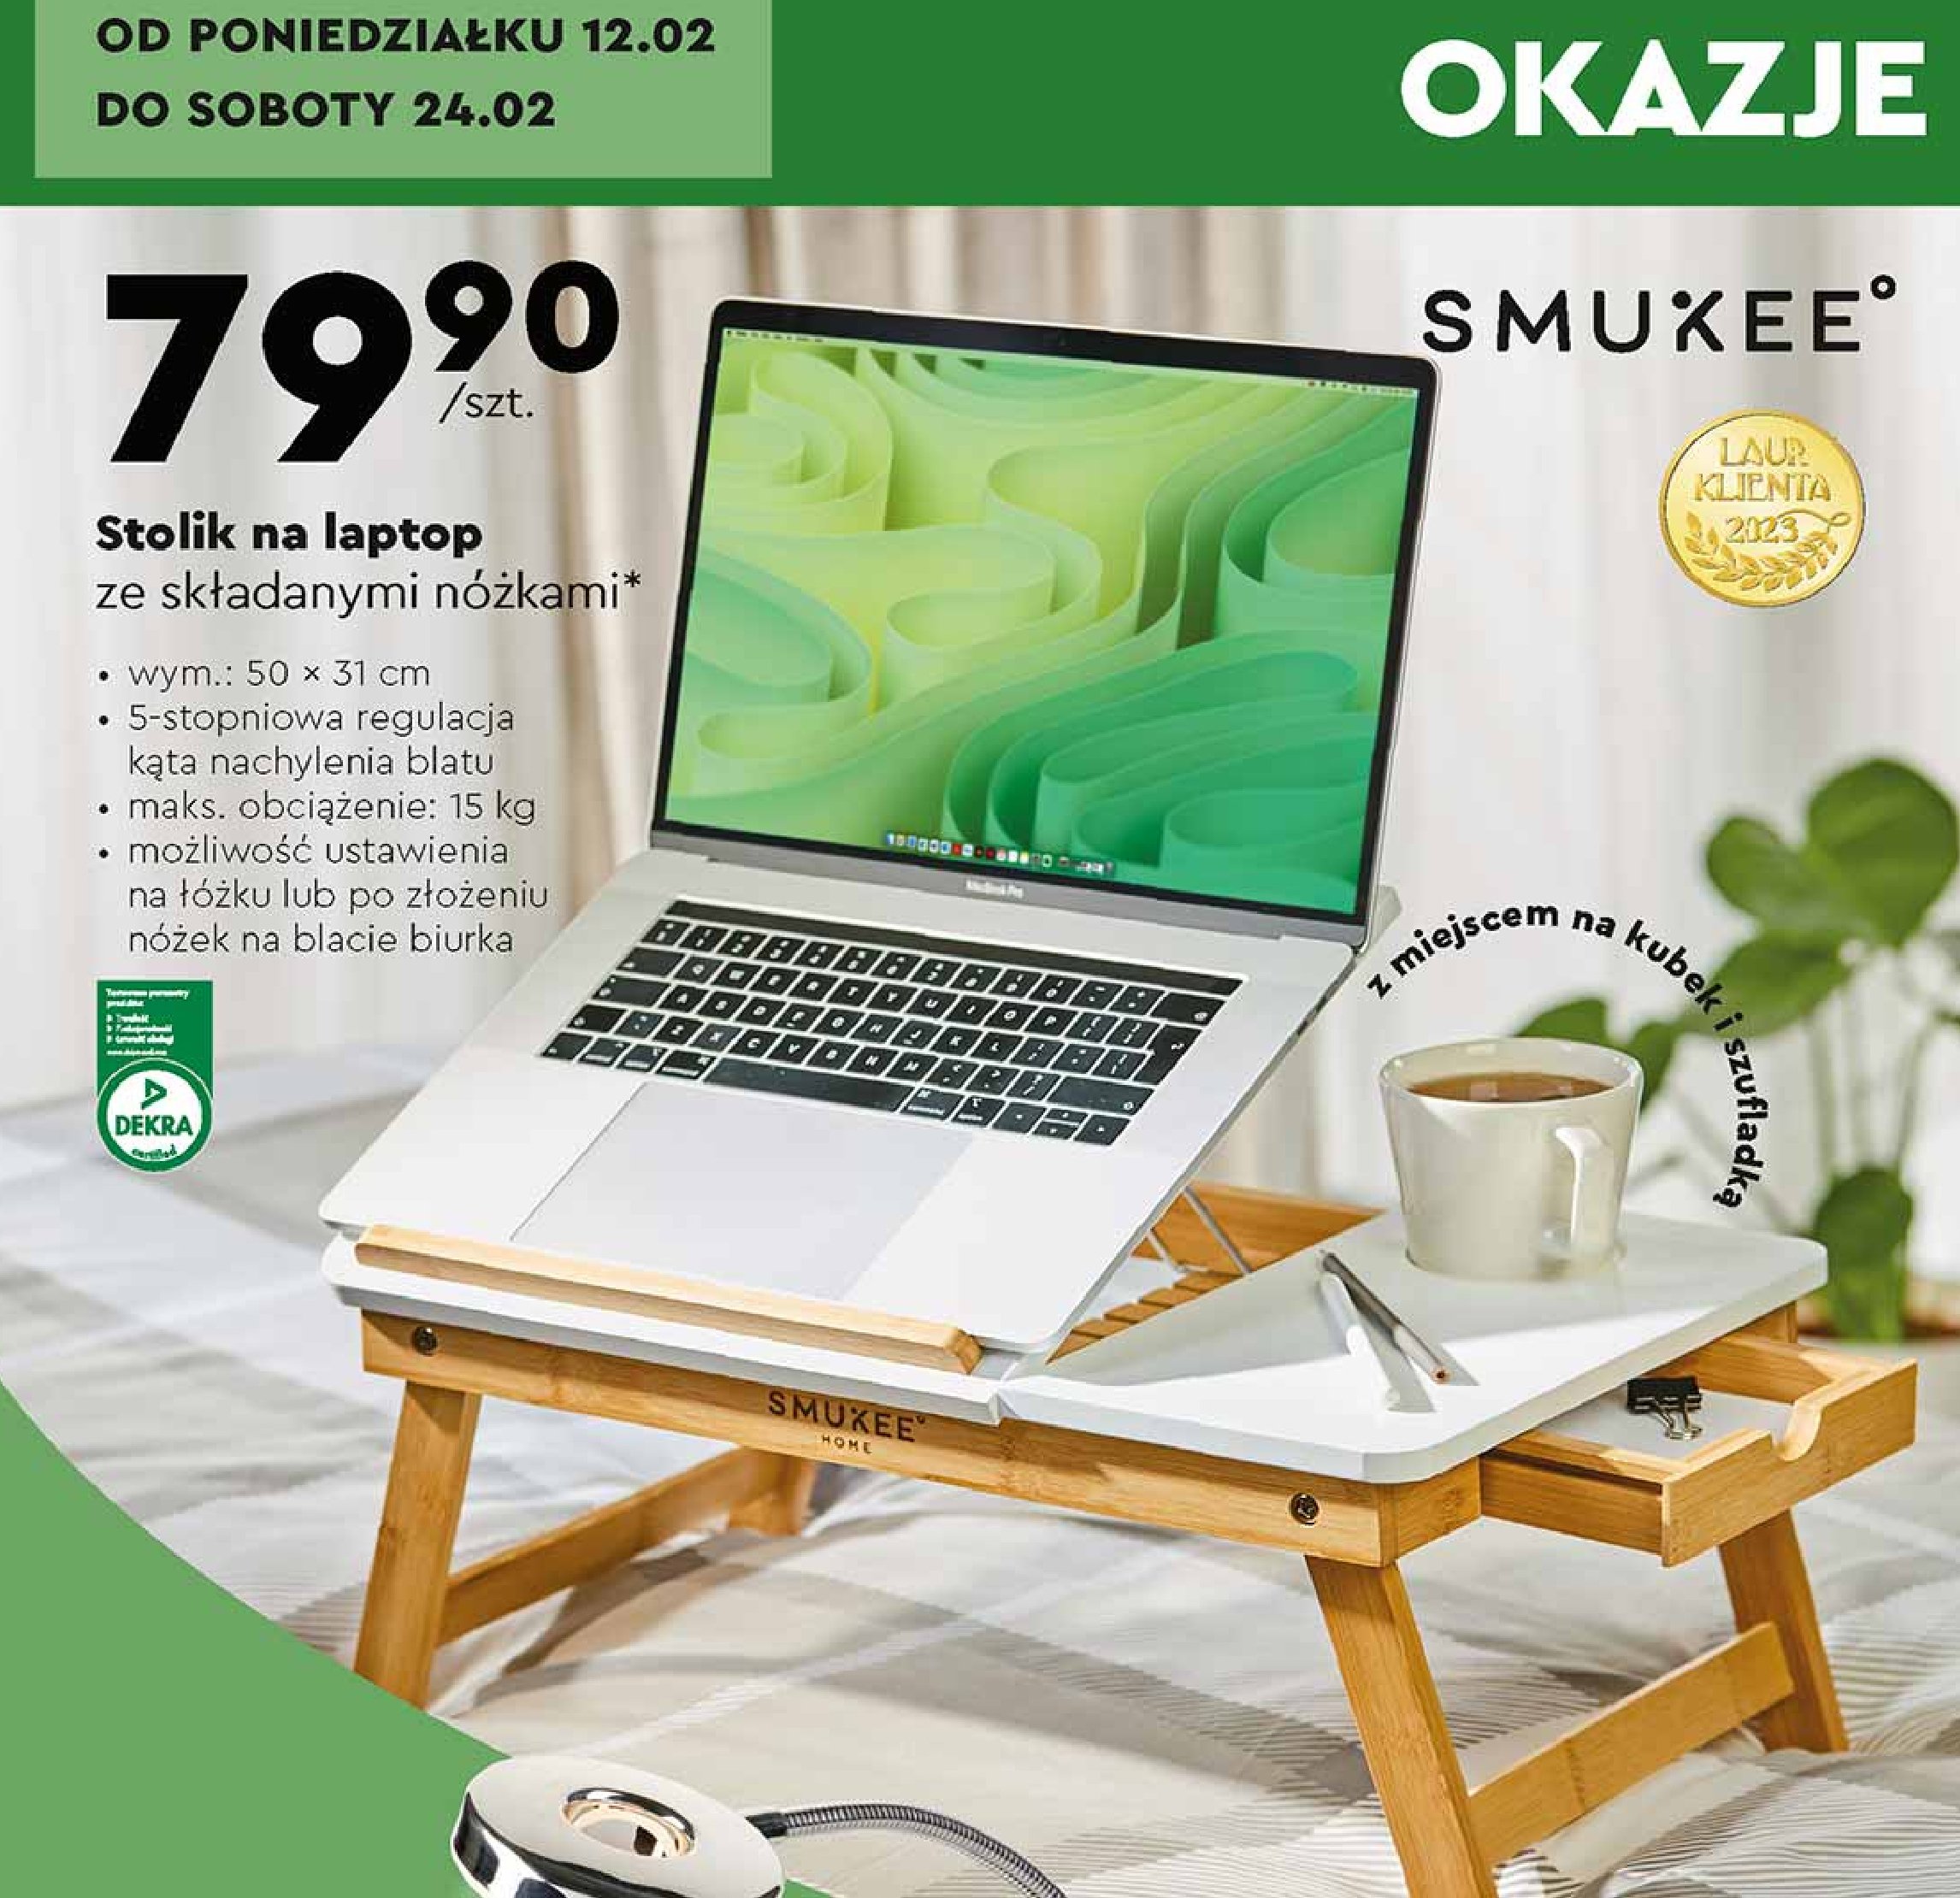 Stolik na laptop ze składanymi nóżkami 50 x 31 cm Smukee promocja